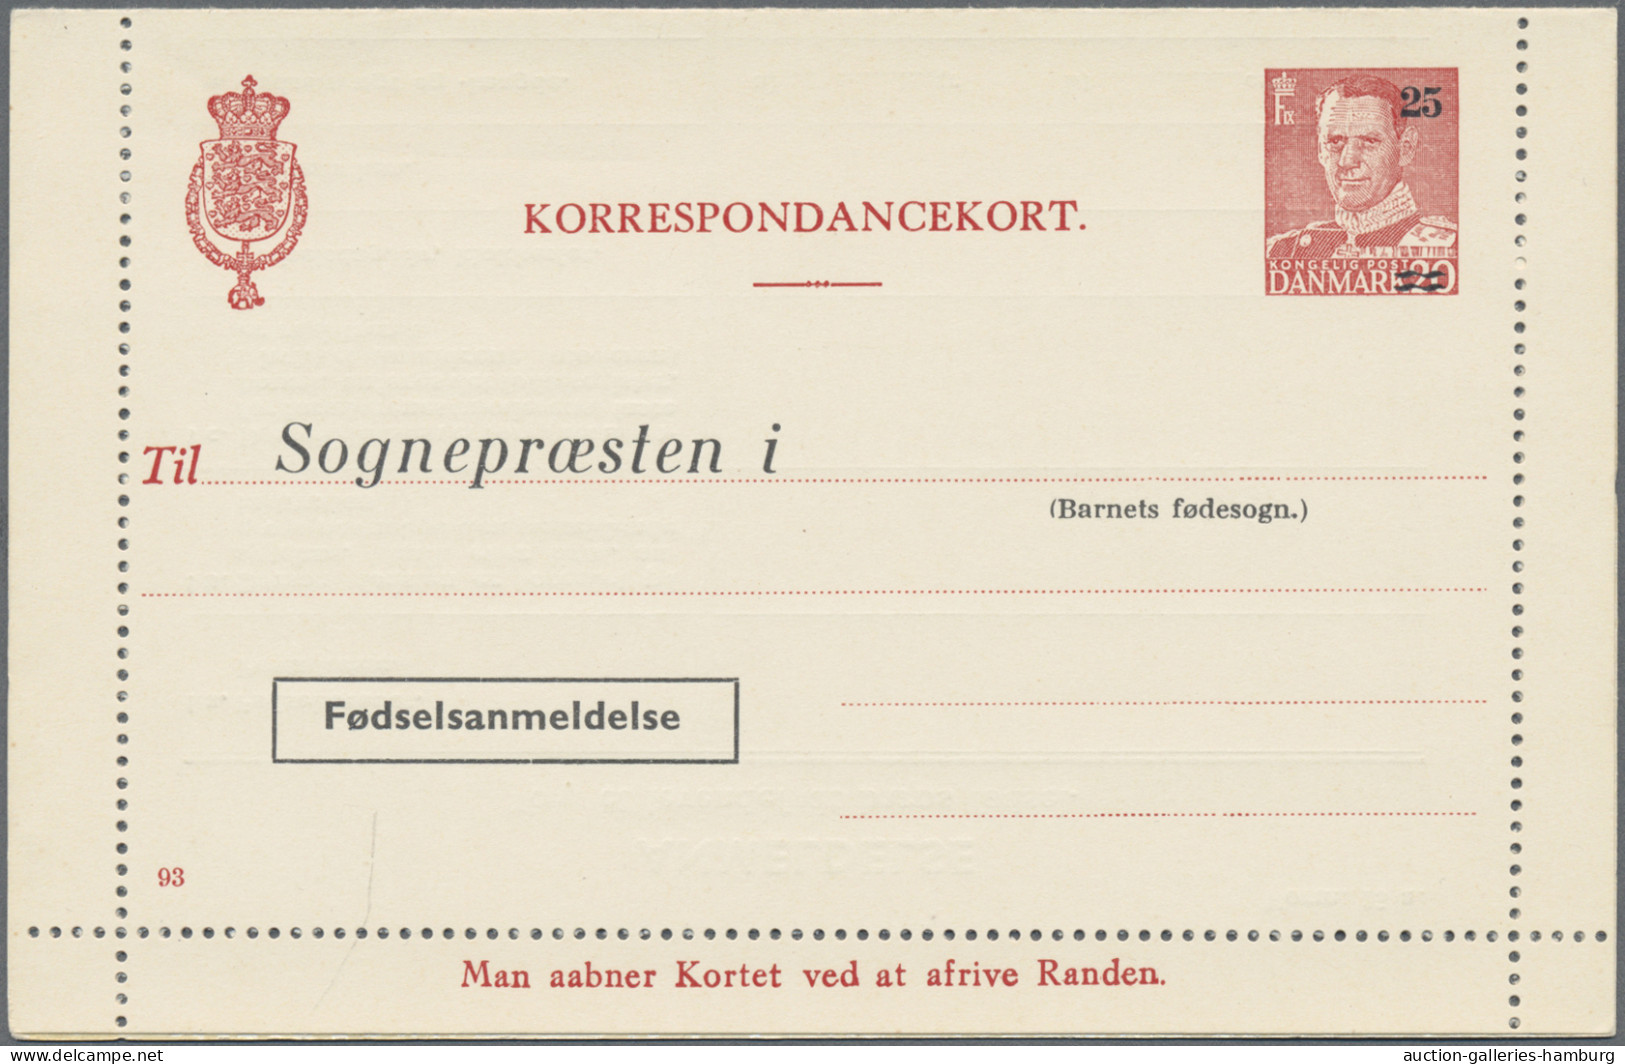 Denmark - postal stationery: 1953/1965, Letter Cards for Population Register, lo